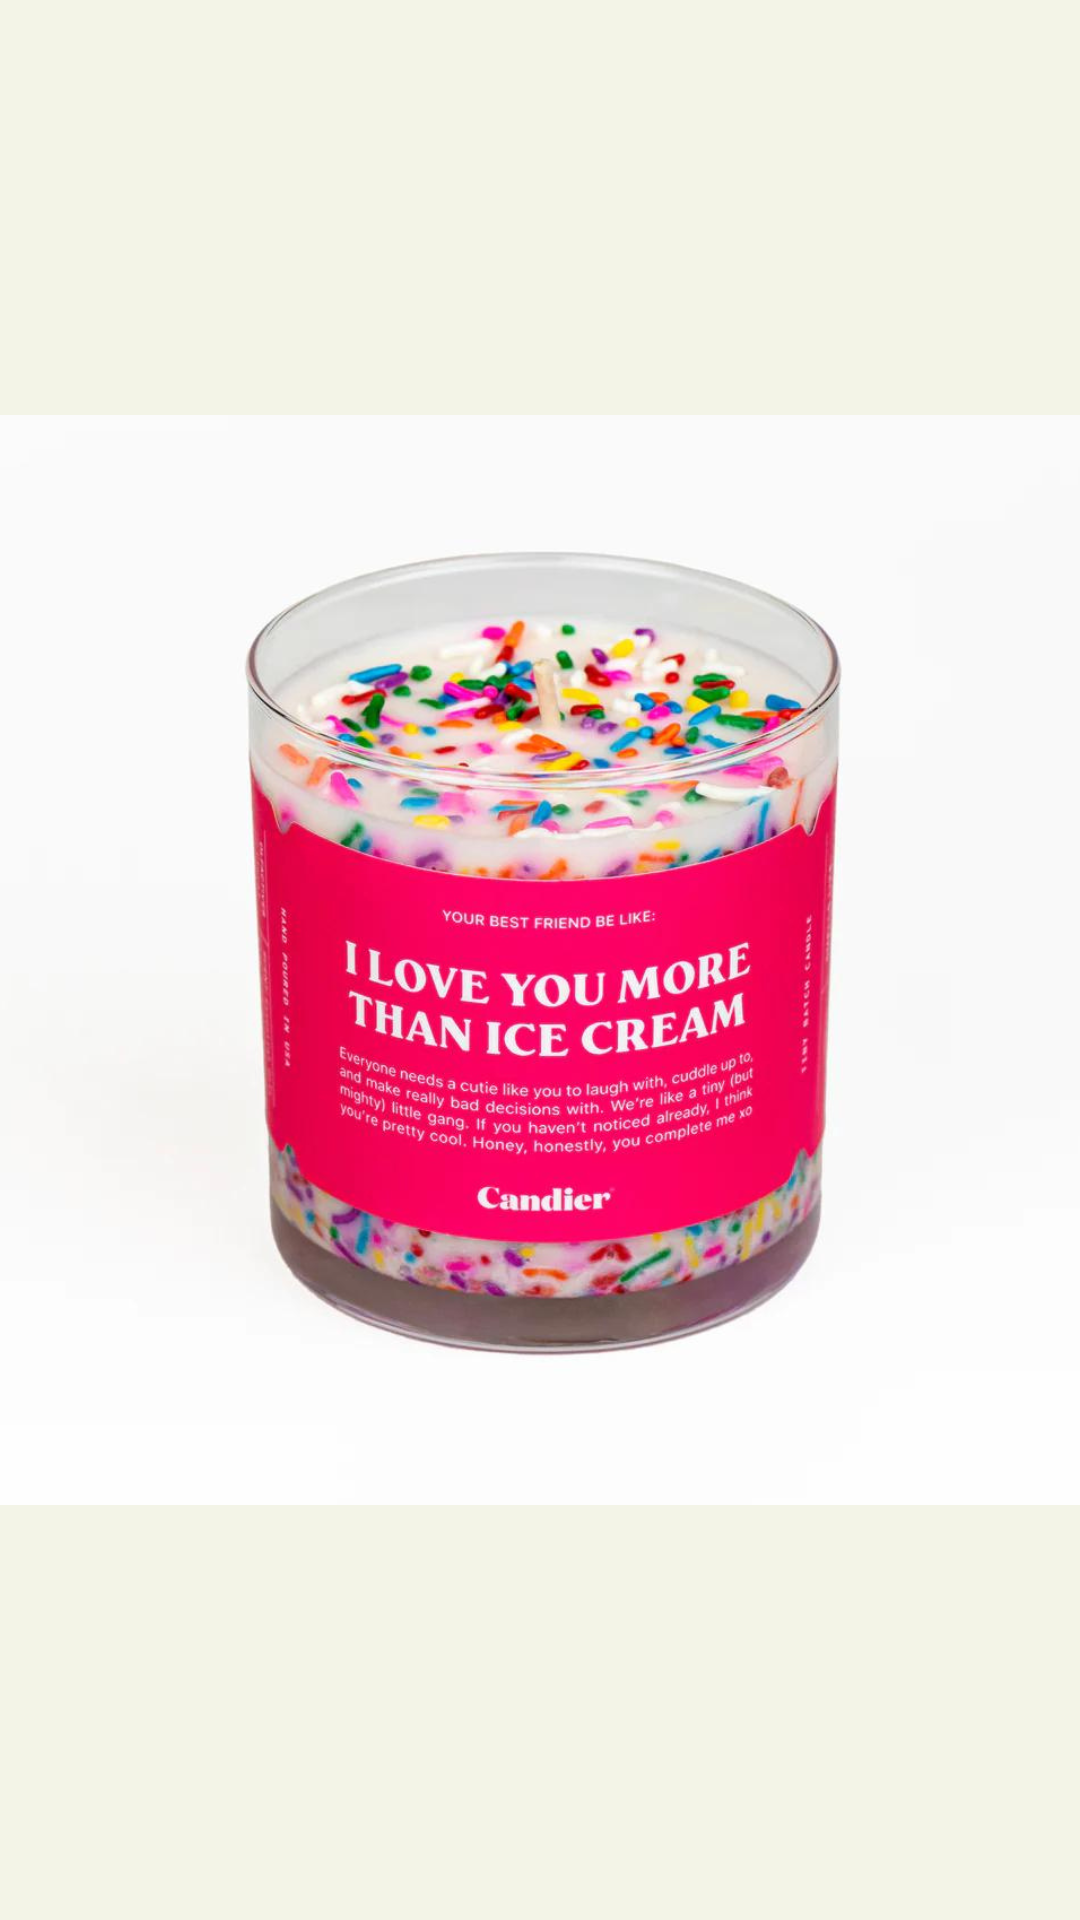 I love You More than Ice Cream